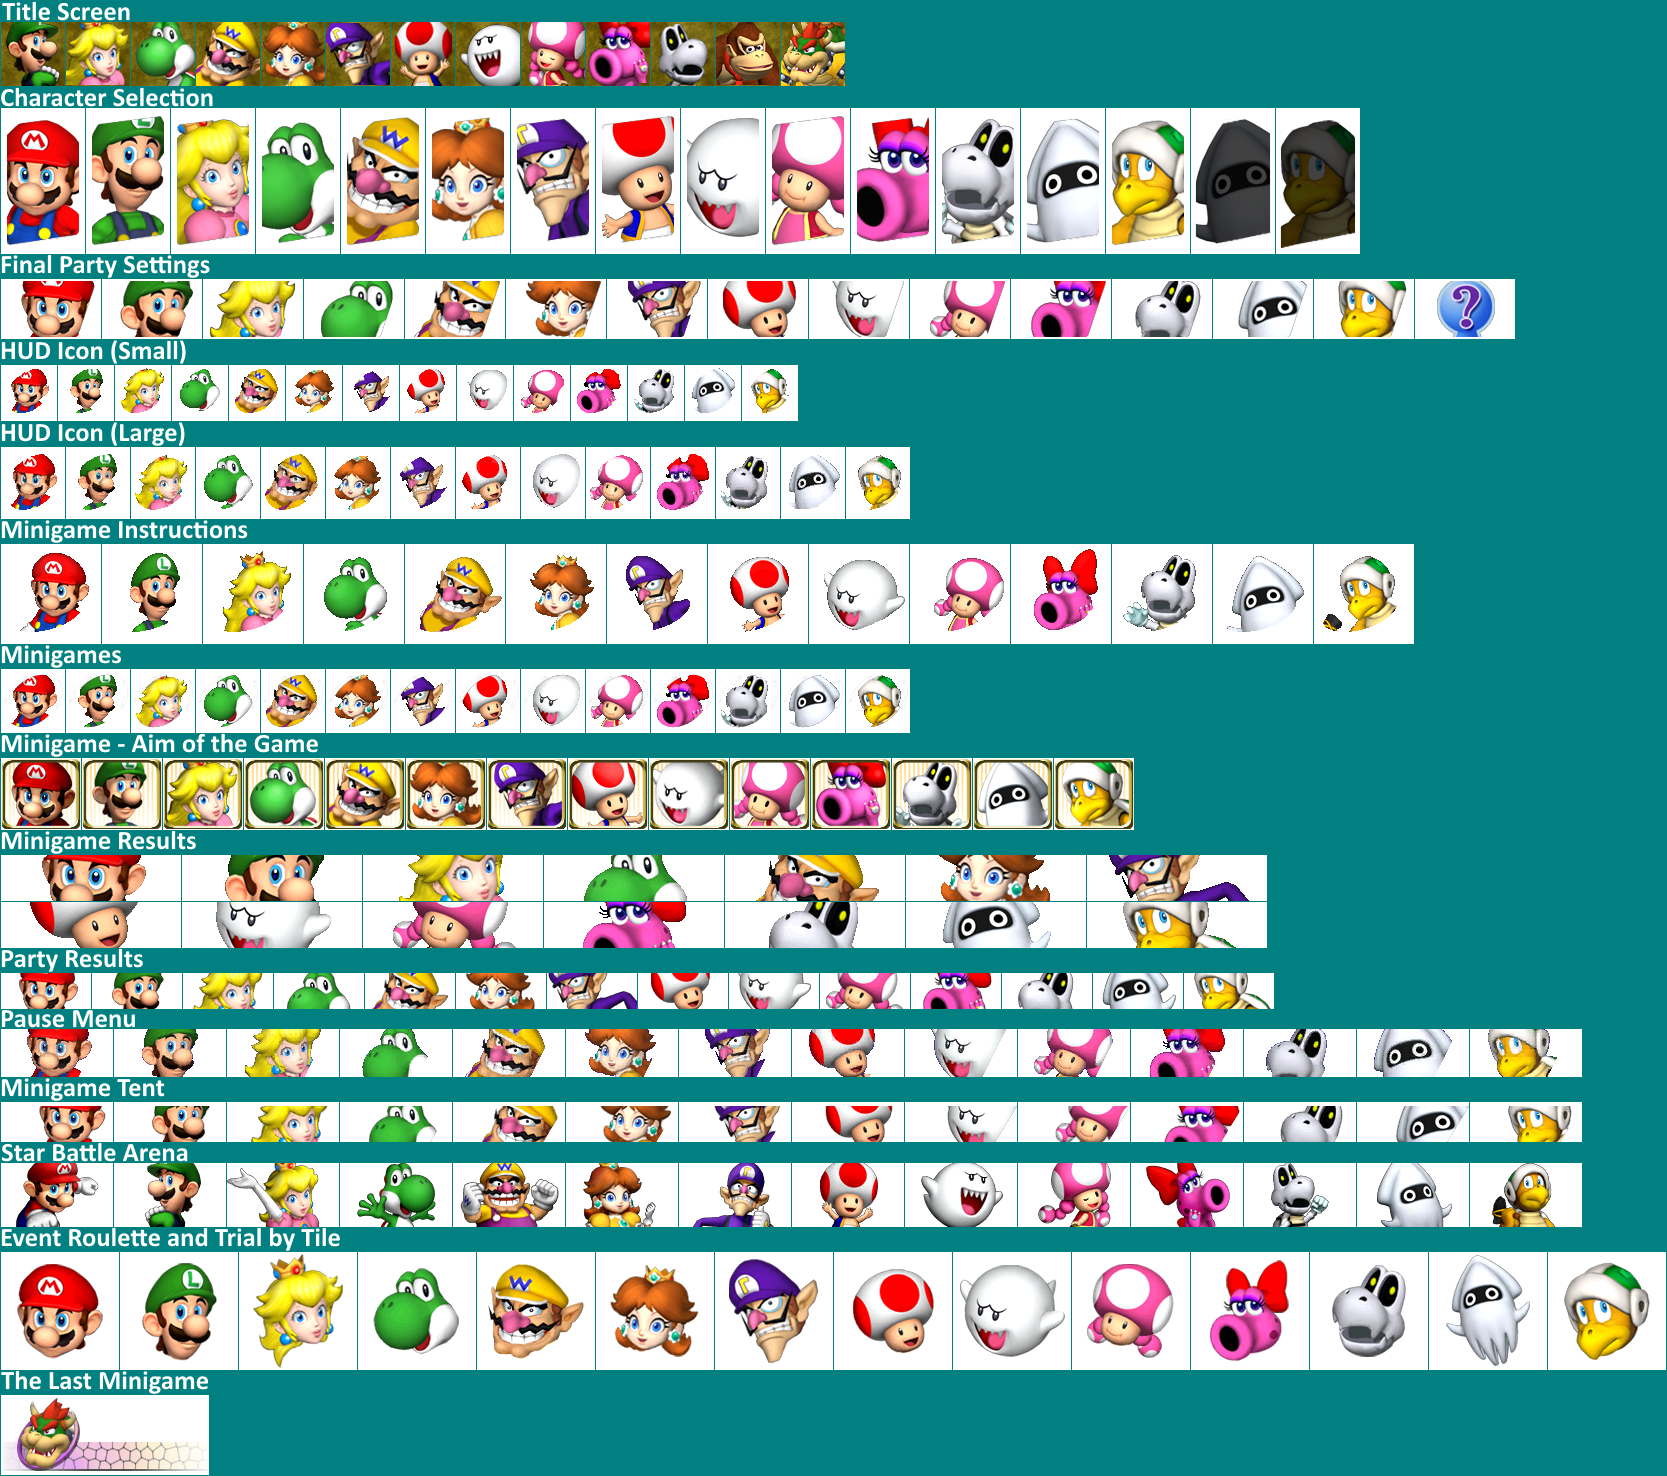 reinado promoción penitencia Wii - Mario Party 8 - Character Portraits - The Spriters Resource